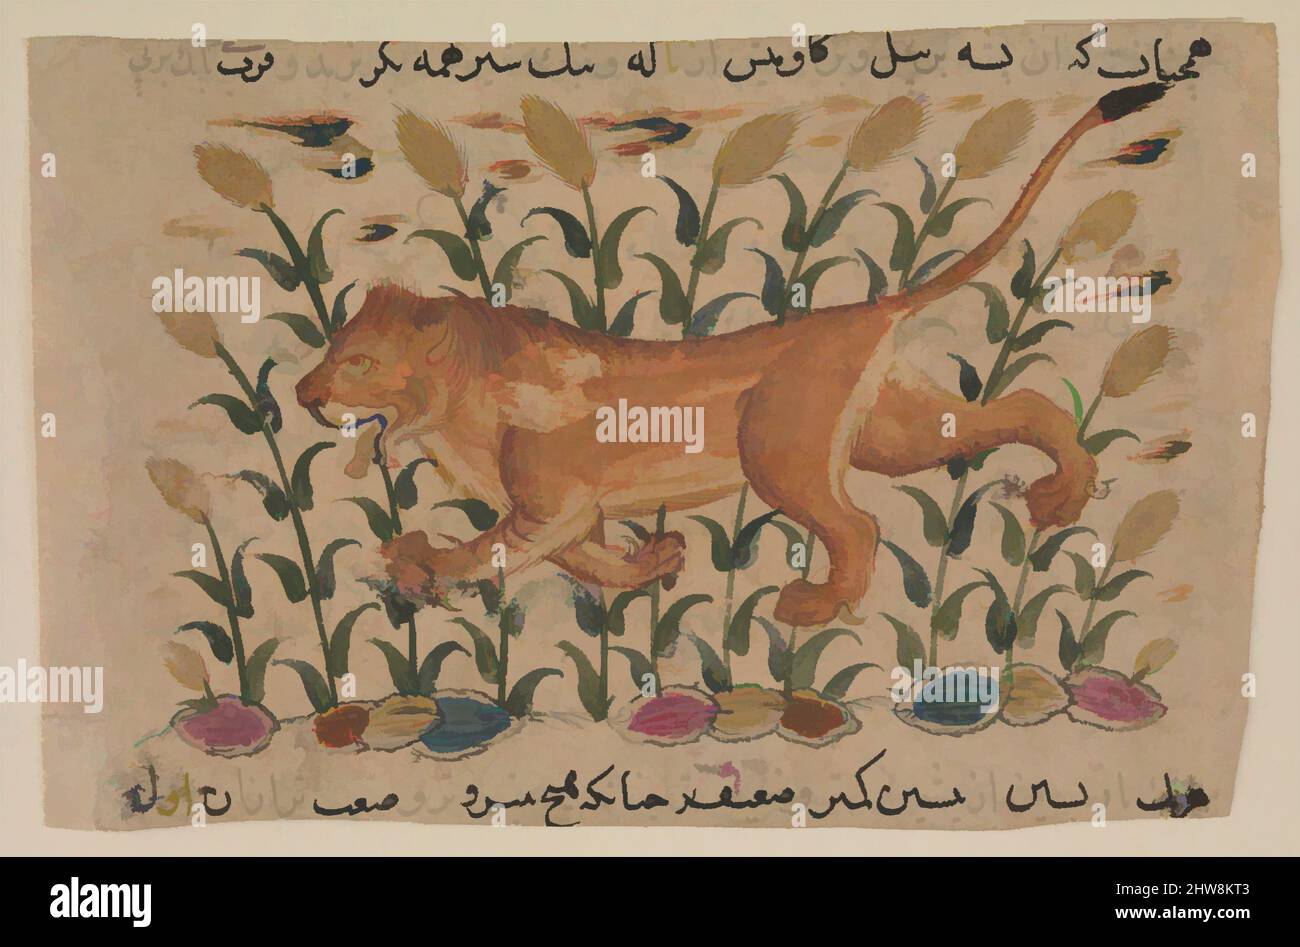 Art inspiré par Un Lion', Folio d'un Nuzhatnama-i dispersé 'Ala'i de Shahmardan ibn Abi'l Khayr, début du 17th siècle, attribué à l'Iran, peut-être Qazvin, encre, Aquarelle opaque et or sur papier, page : 3 po. (7,6 cm), CODICES, le texte encyclopédique d'où vient cette page, oeuvres classiques modernisées par Artotop avec un peu de modernité. Formes, couleur et valeur, impact visuel accrocheur sur l'art émotions par la liberté d'œuvres d'art d'une manière contemporaine. Un message intemporel qui cherche une nouvelle direction créative. Artistes qui se tournent vers le support numérique et créent le NFT Artotop Banque D'Images